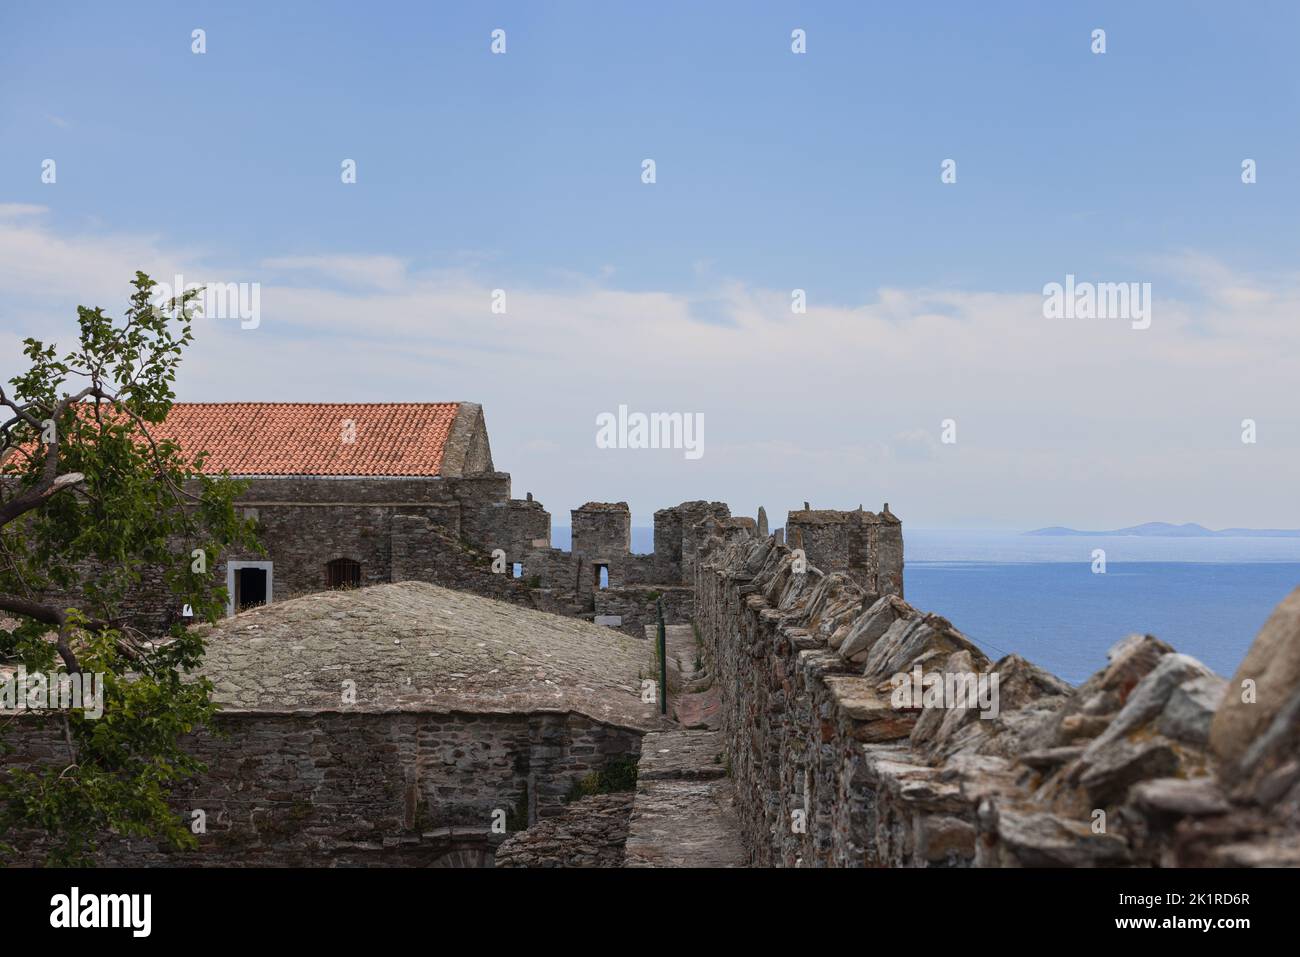 Merlature di mura del castello, orizzonte costituito da mare e catena montuosa silhouette, tetto piastrellato, e albero verde. Kavala, Grecia Foto Stock